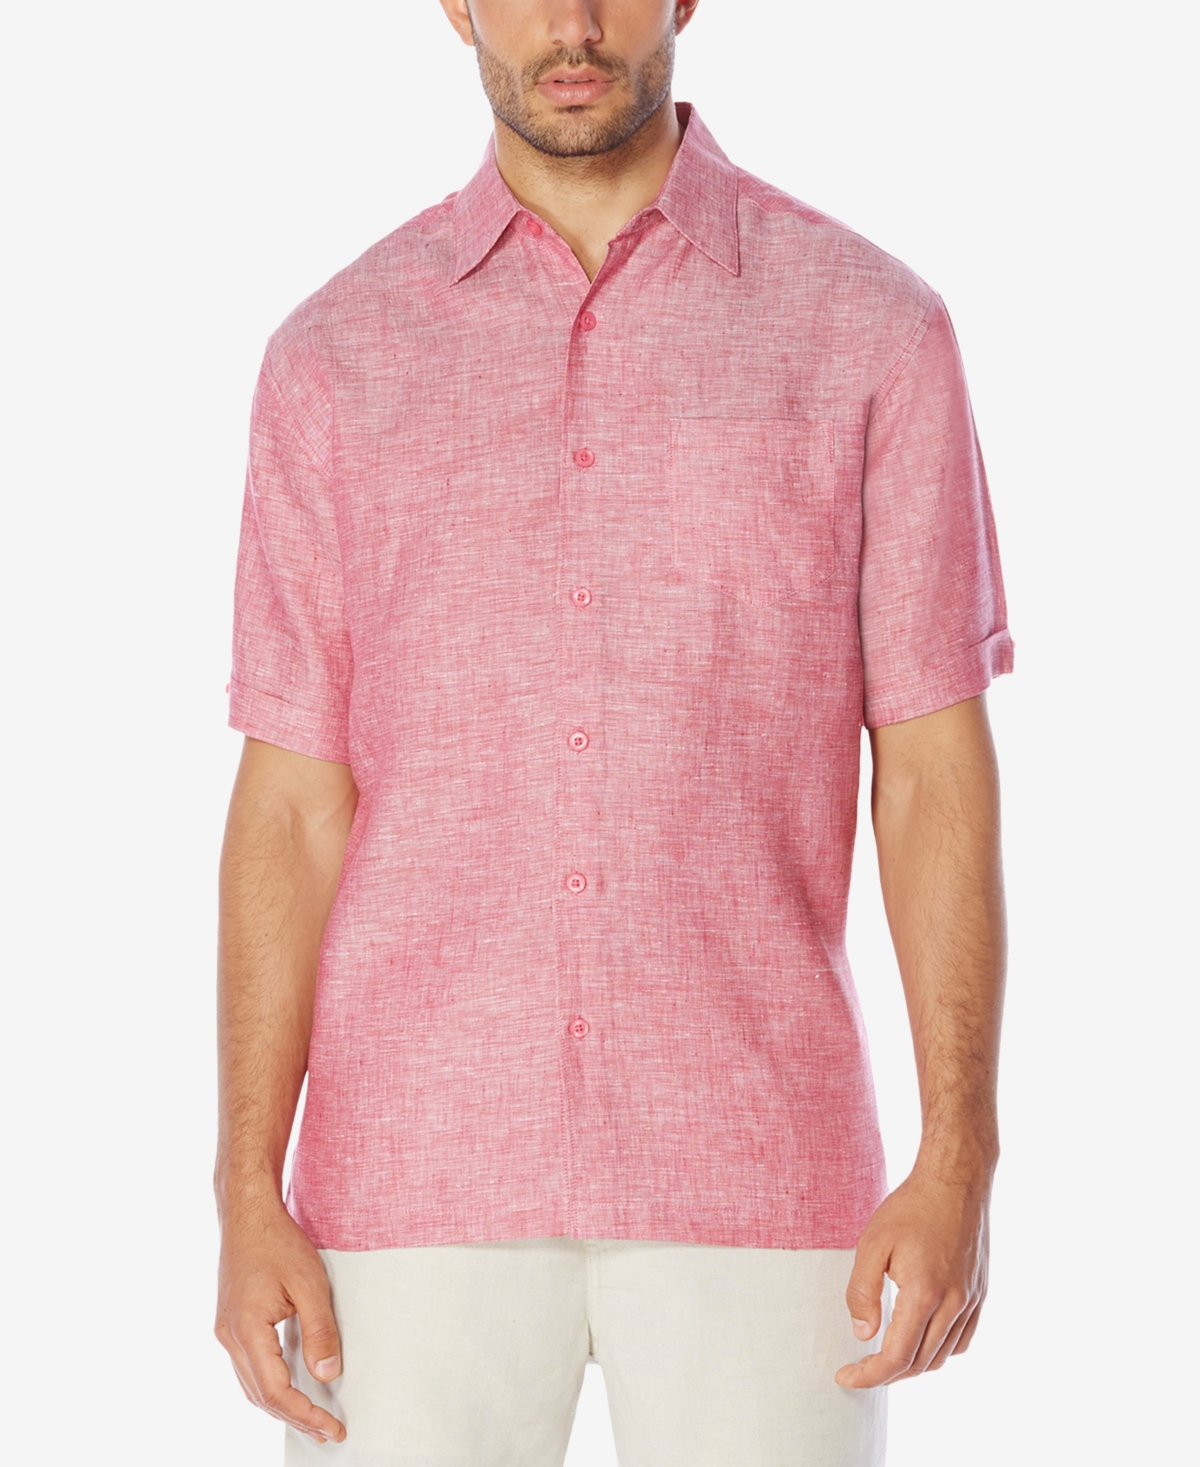 Cubavera Men's 100% Linen Short-Sleeve Shirt